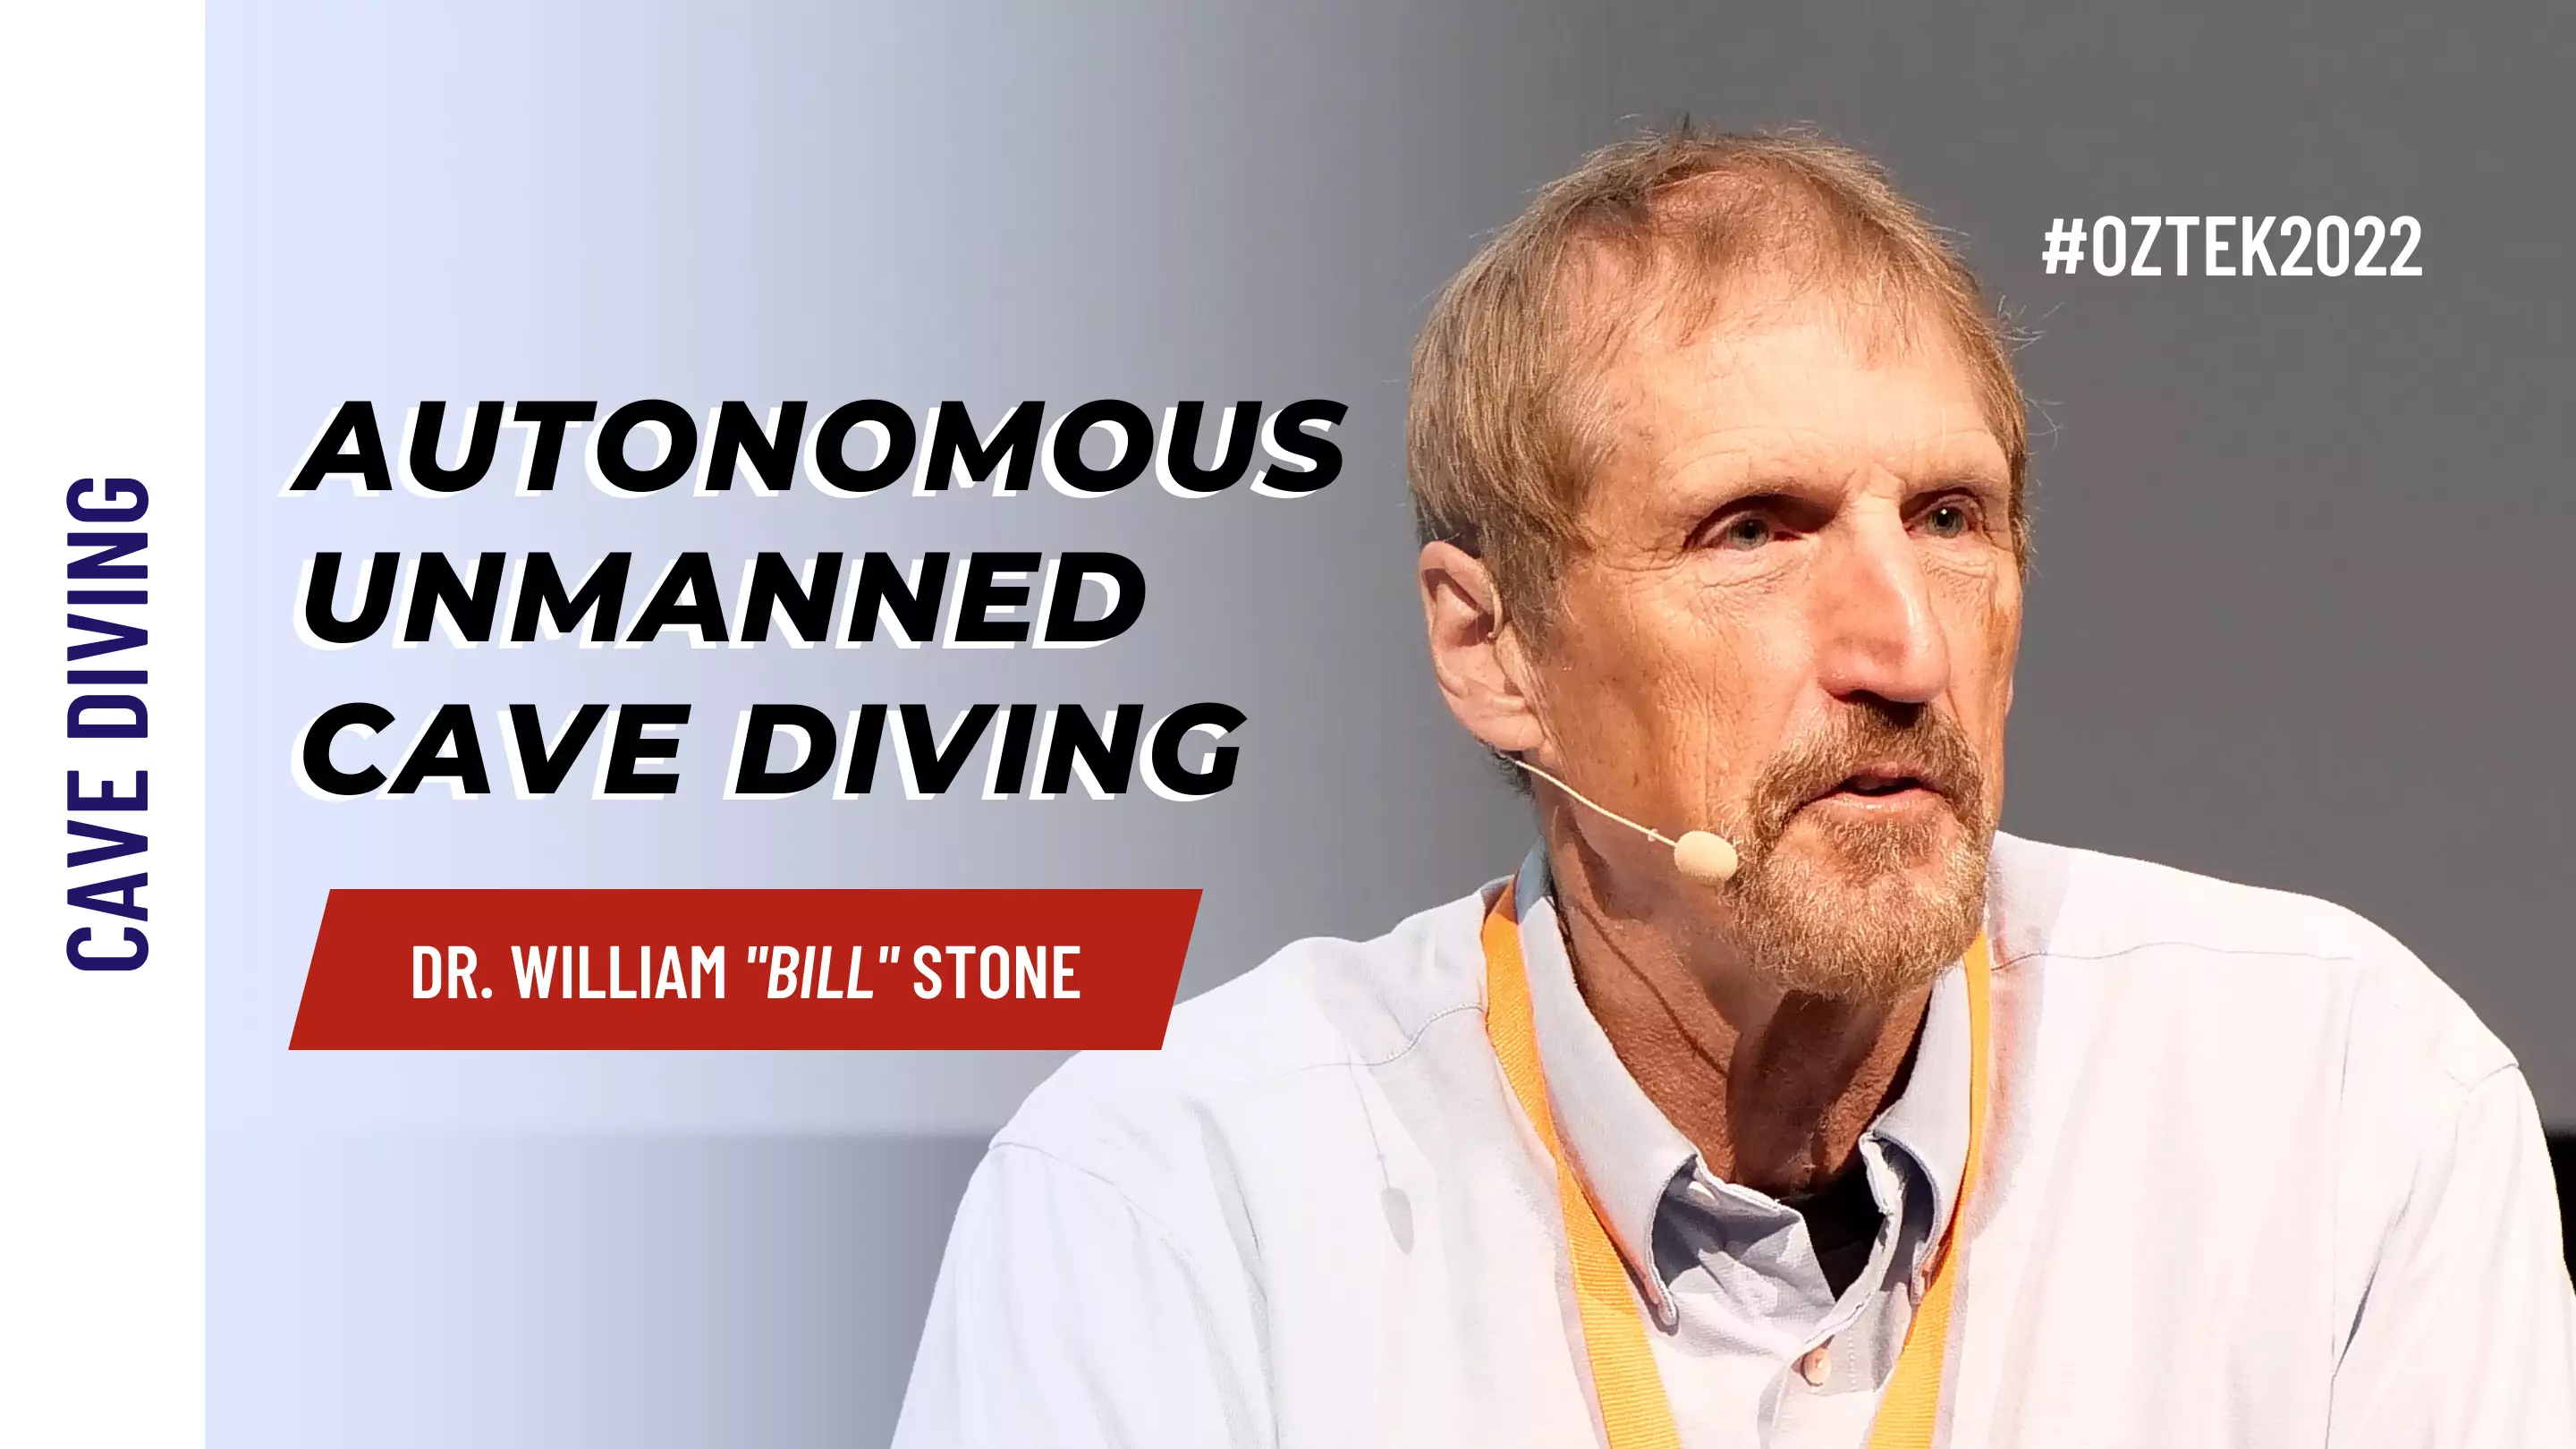 Bill Stone - Recent Advances in Autonomous Unmanned Cave Diving | OZTek2022 Cave Diving